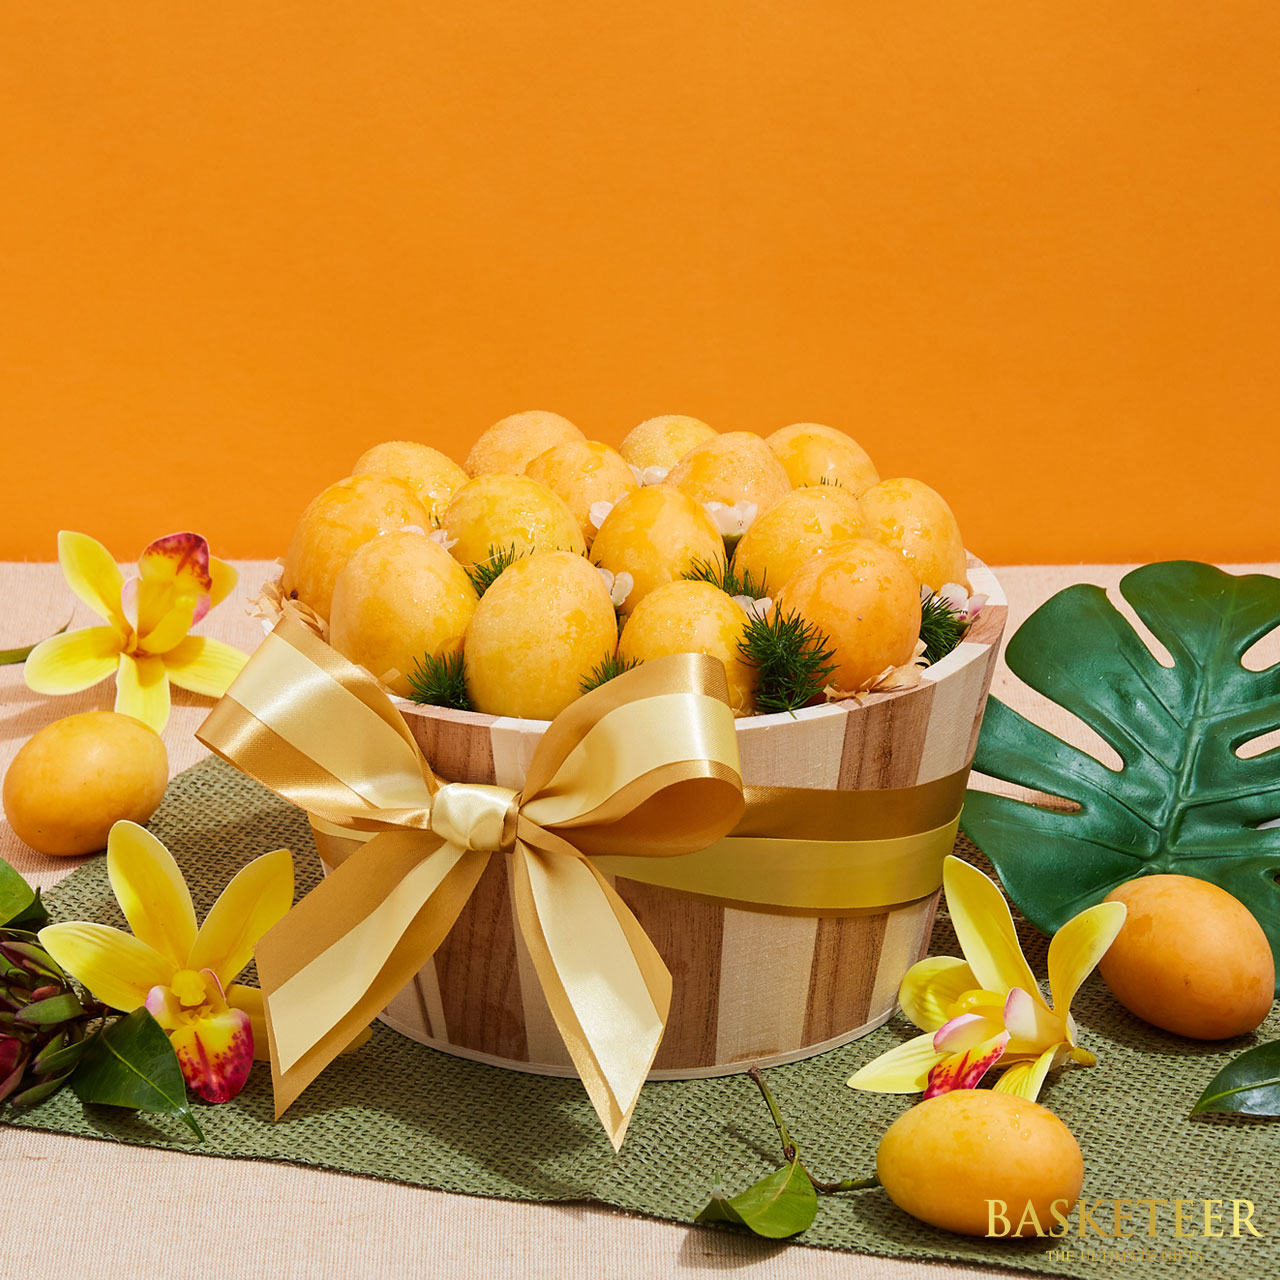 Sweet Yellow Marian Plum Fruit Basket